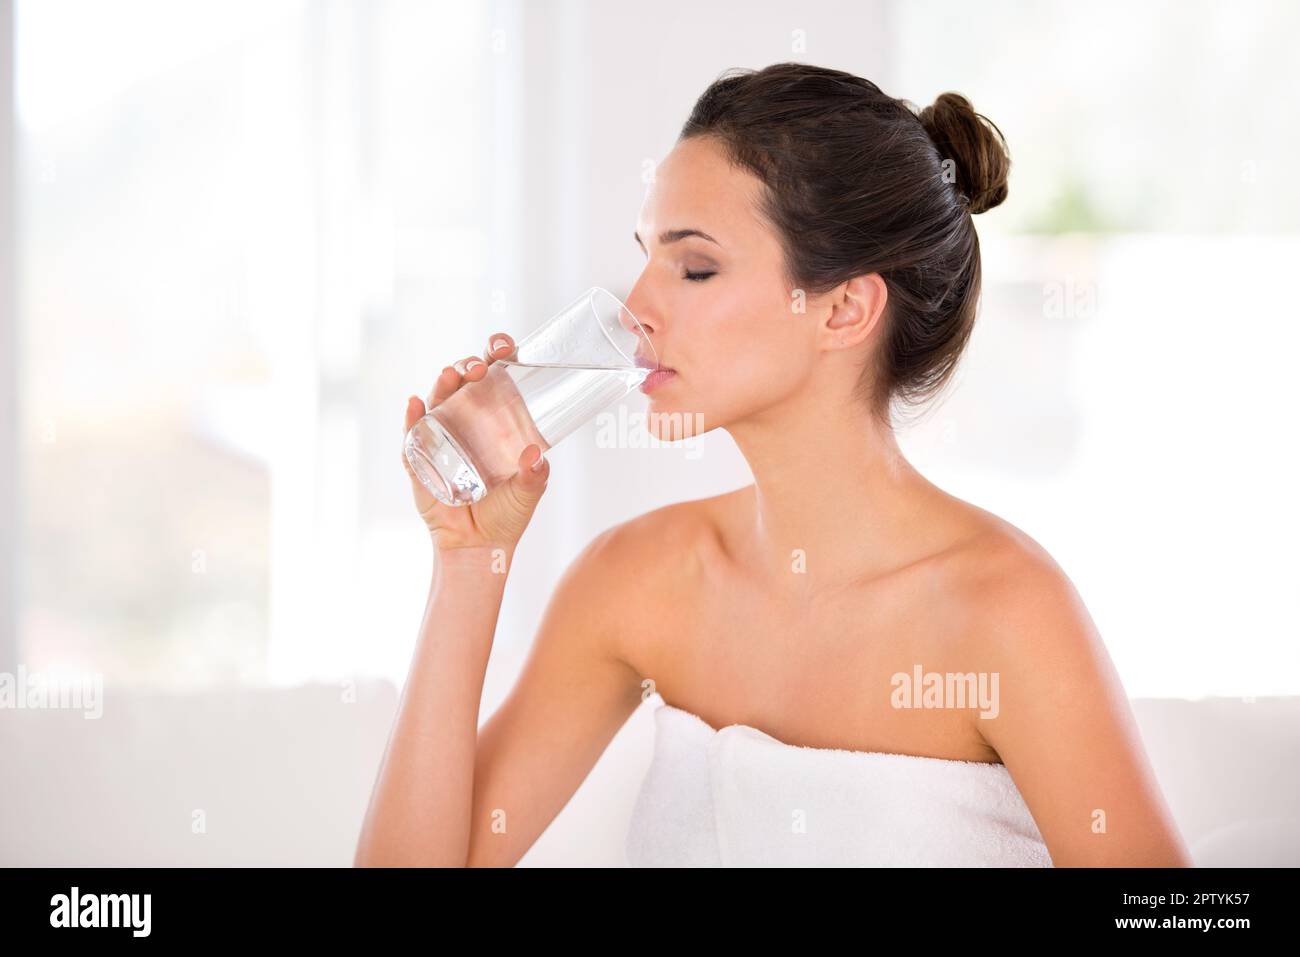 Rajeunir sa peau. Vue latérale d'une belle femme buvant un verre d'eau  Photo Stock - Alamy